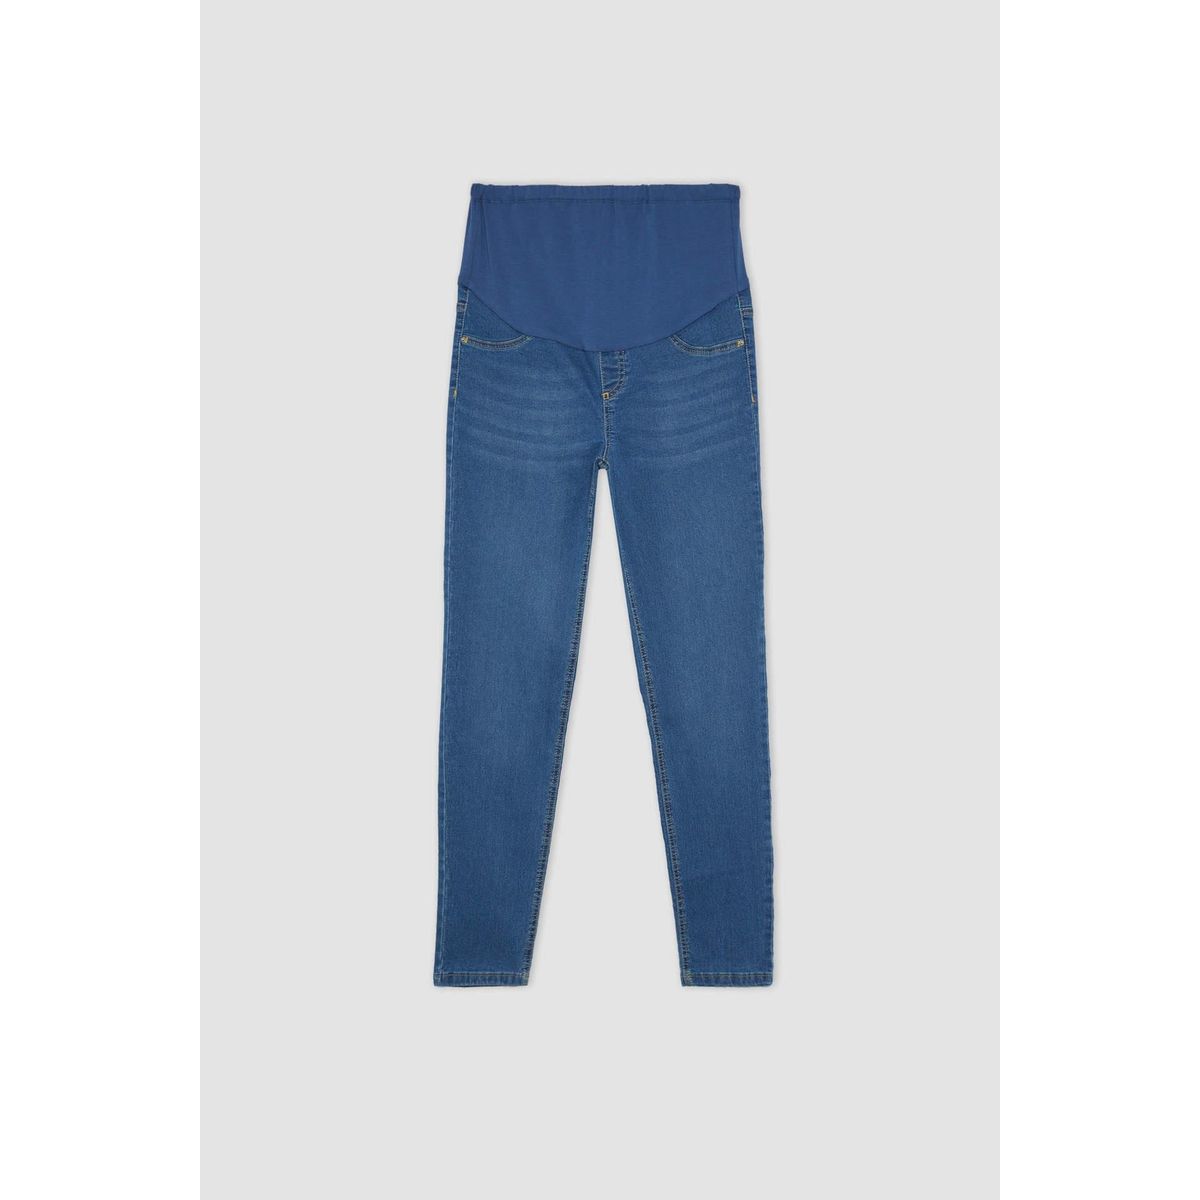 Zara Deri Pantolon Fiyatları - Sayfa 3